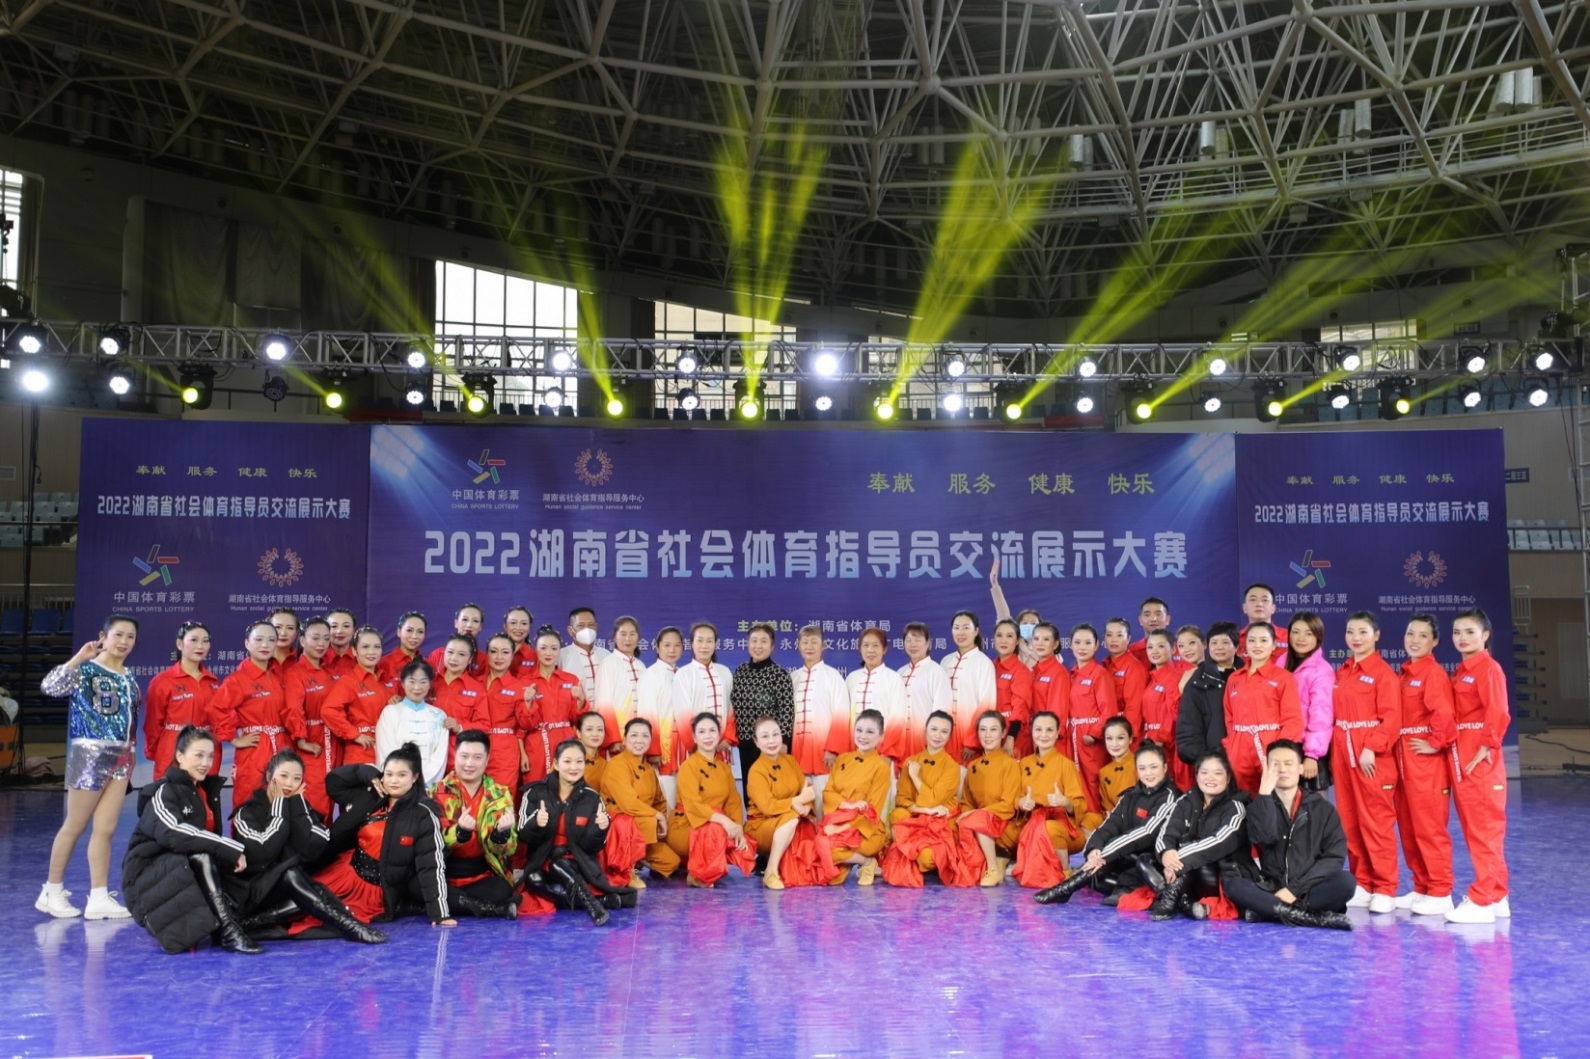 推动社会体育指导员工作跨越式发展  2022湖南社会体育指导员交流展示大赛在永州举行